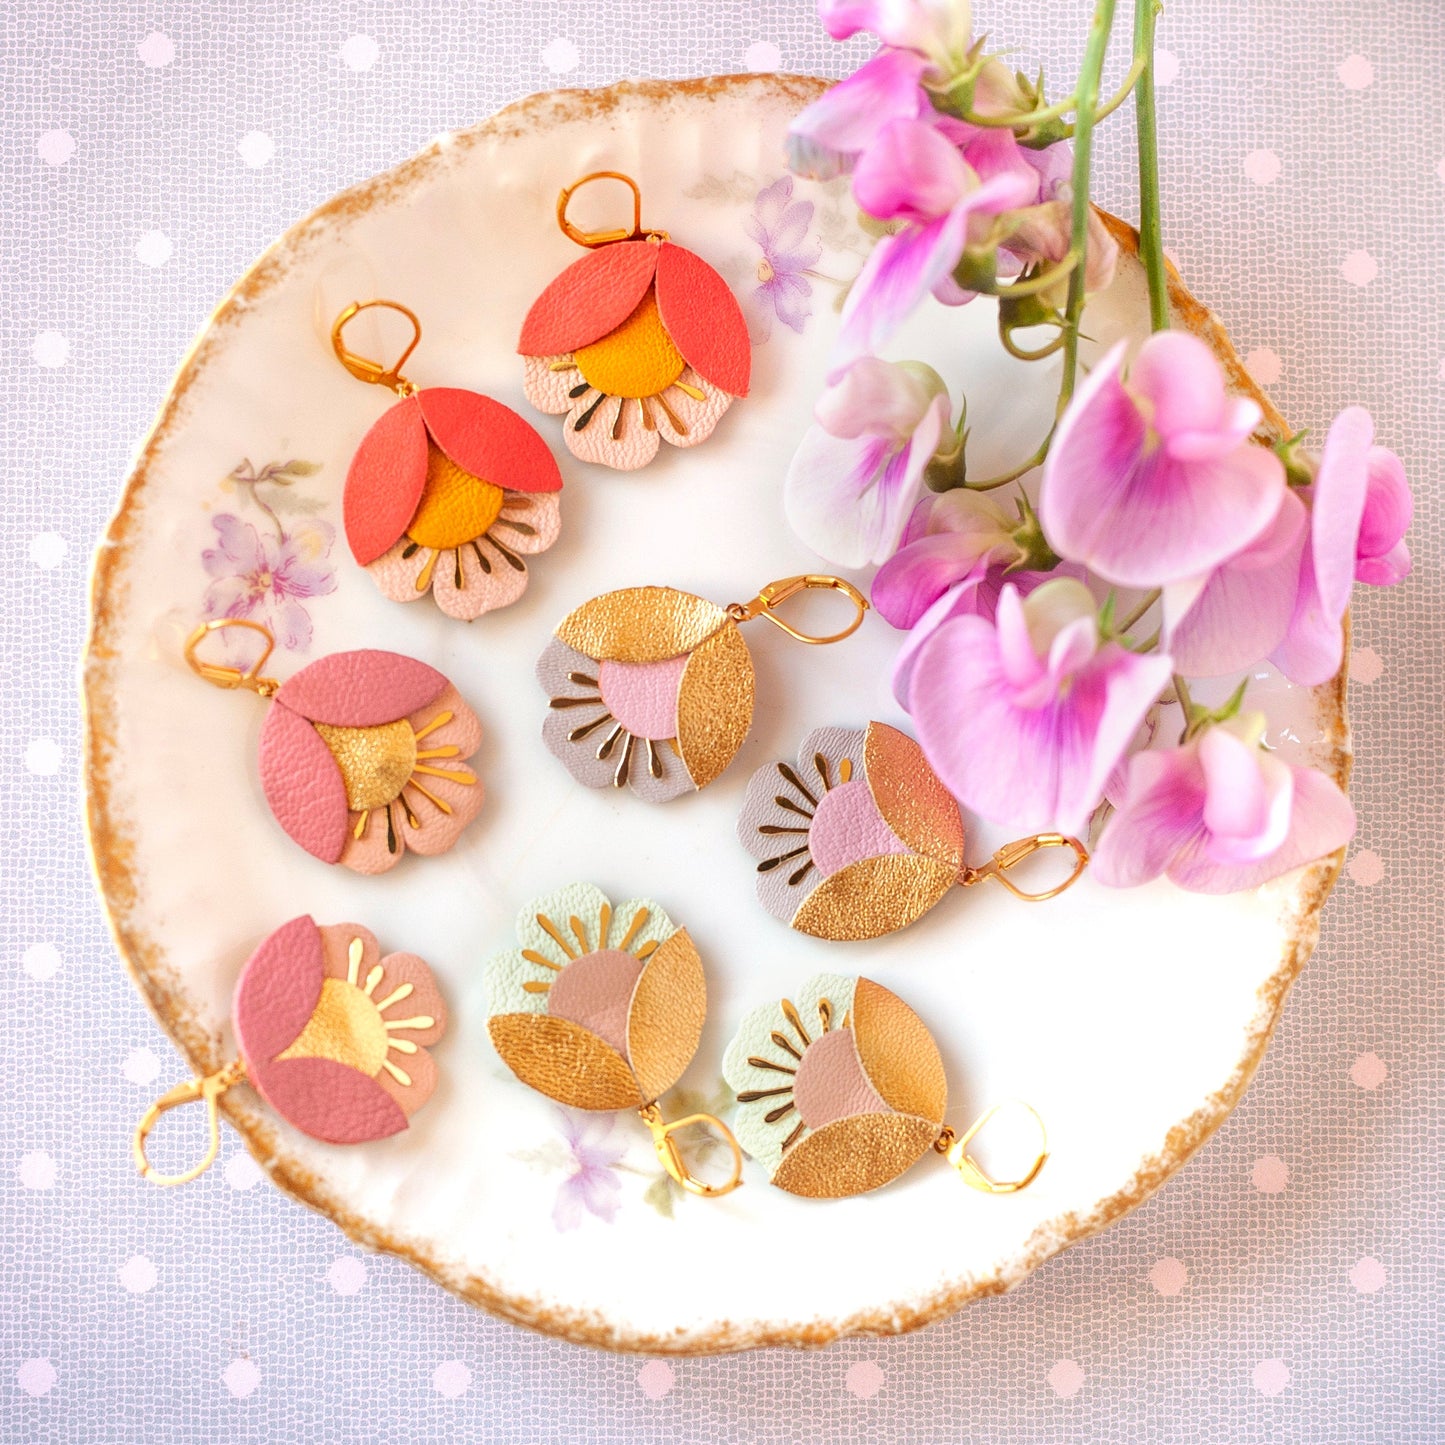 Boucles d'oreilles fleurs de cerisier cuir rose foncé, doré et rose clair